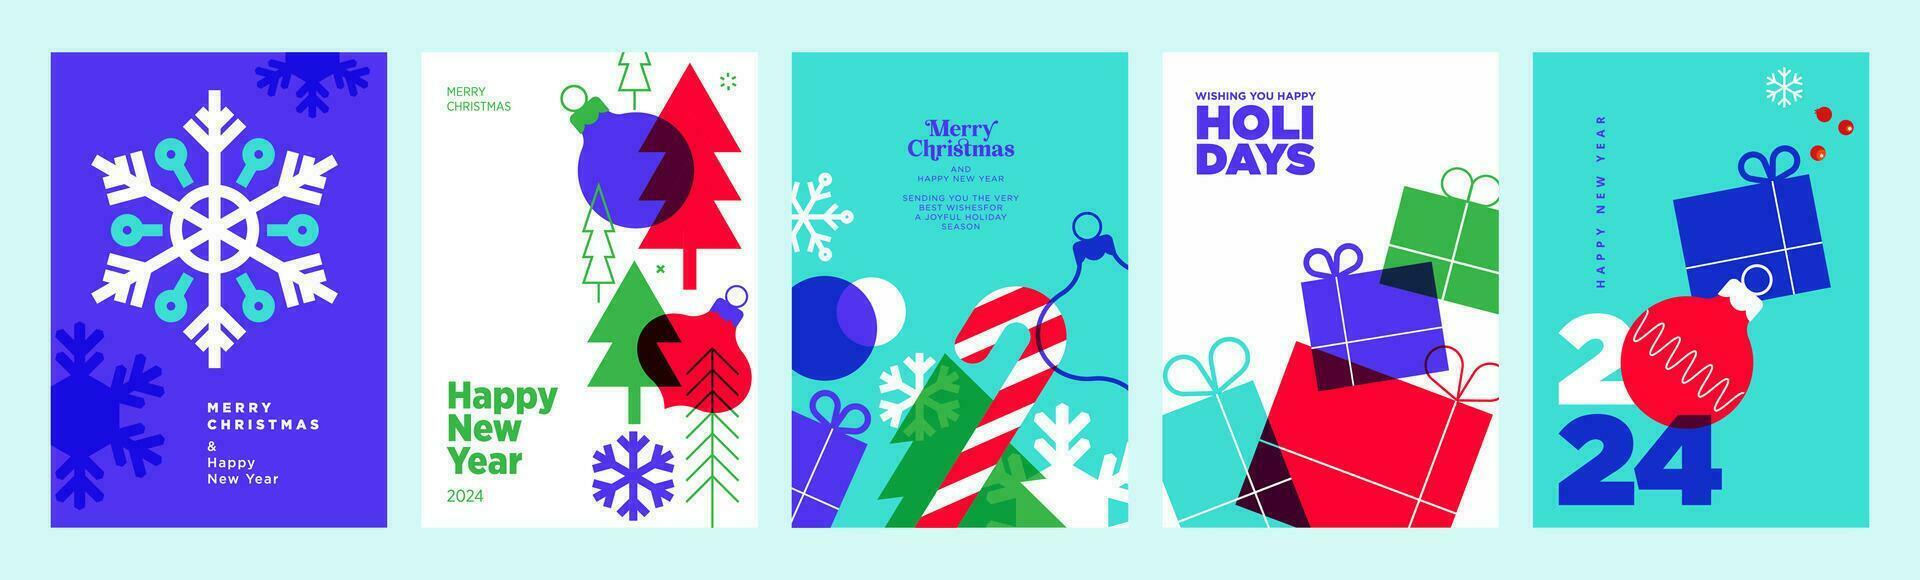 vrolijk Kerstmis en gelukkig nieuw jaar 2024 groet kaarten. vector illustratie concepten voor achtergrond, groet kaart, partij uitnodiging kaart, website banier, sociaal media banier, afzet materiaal.